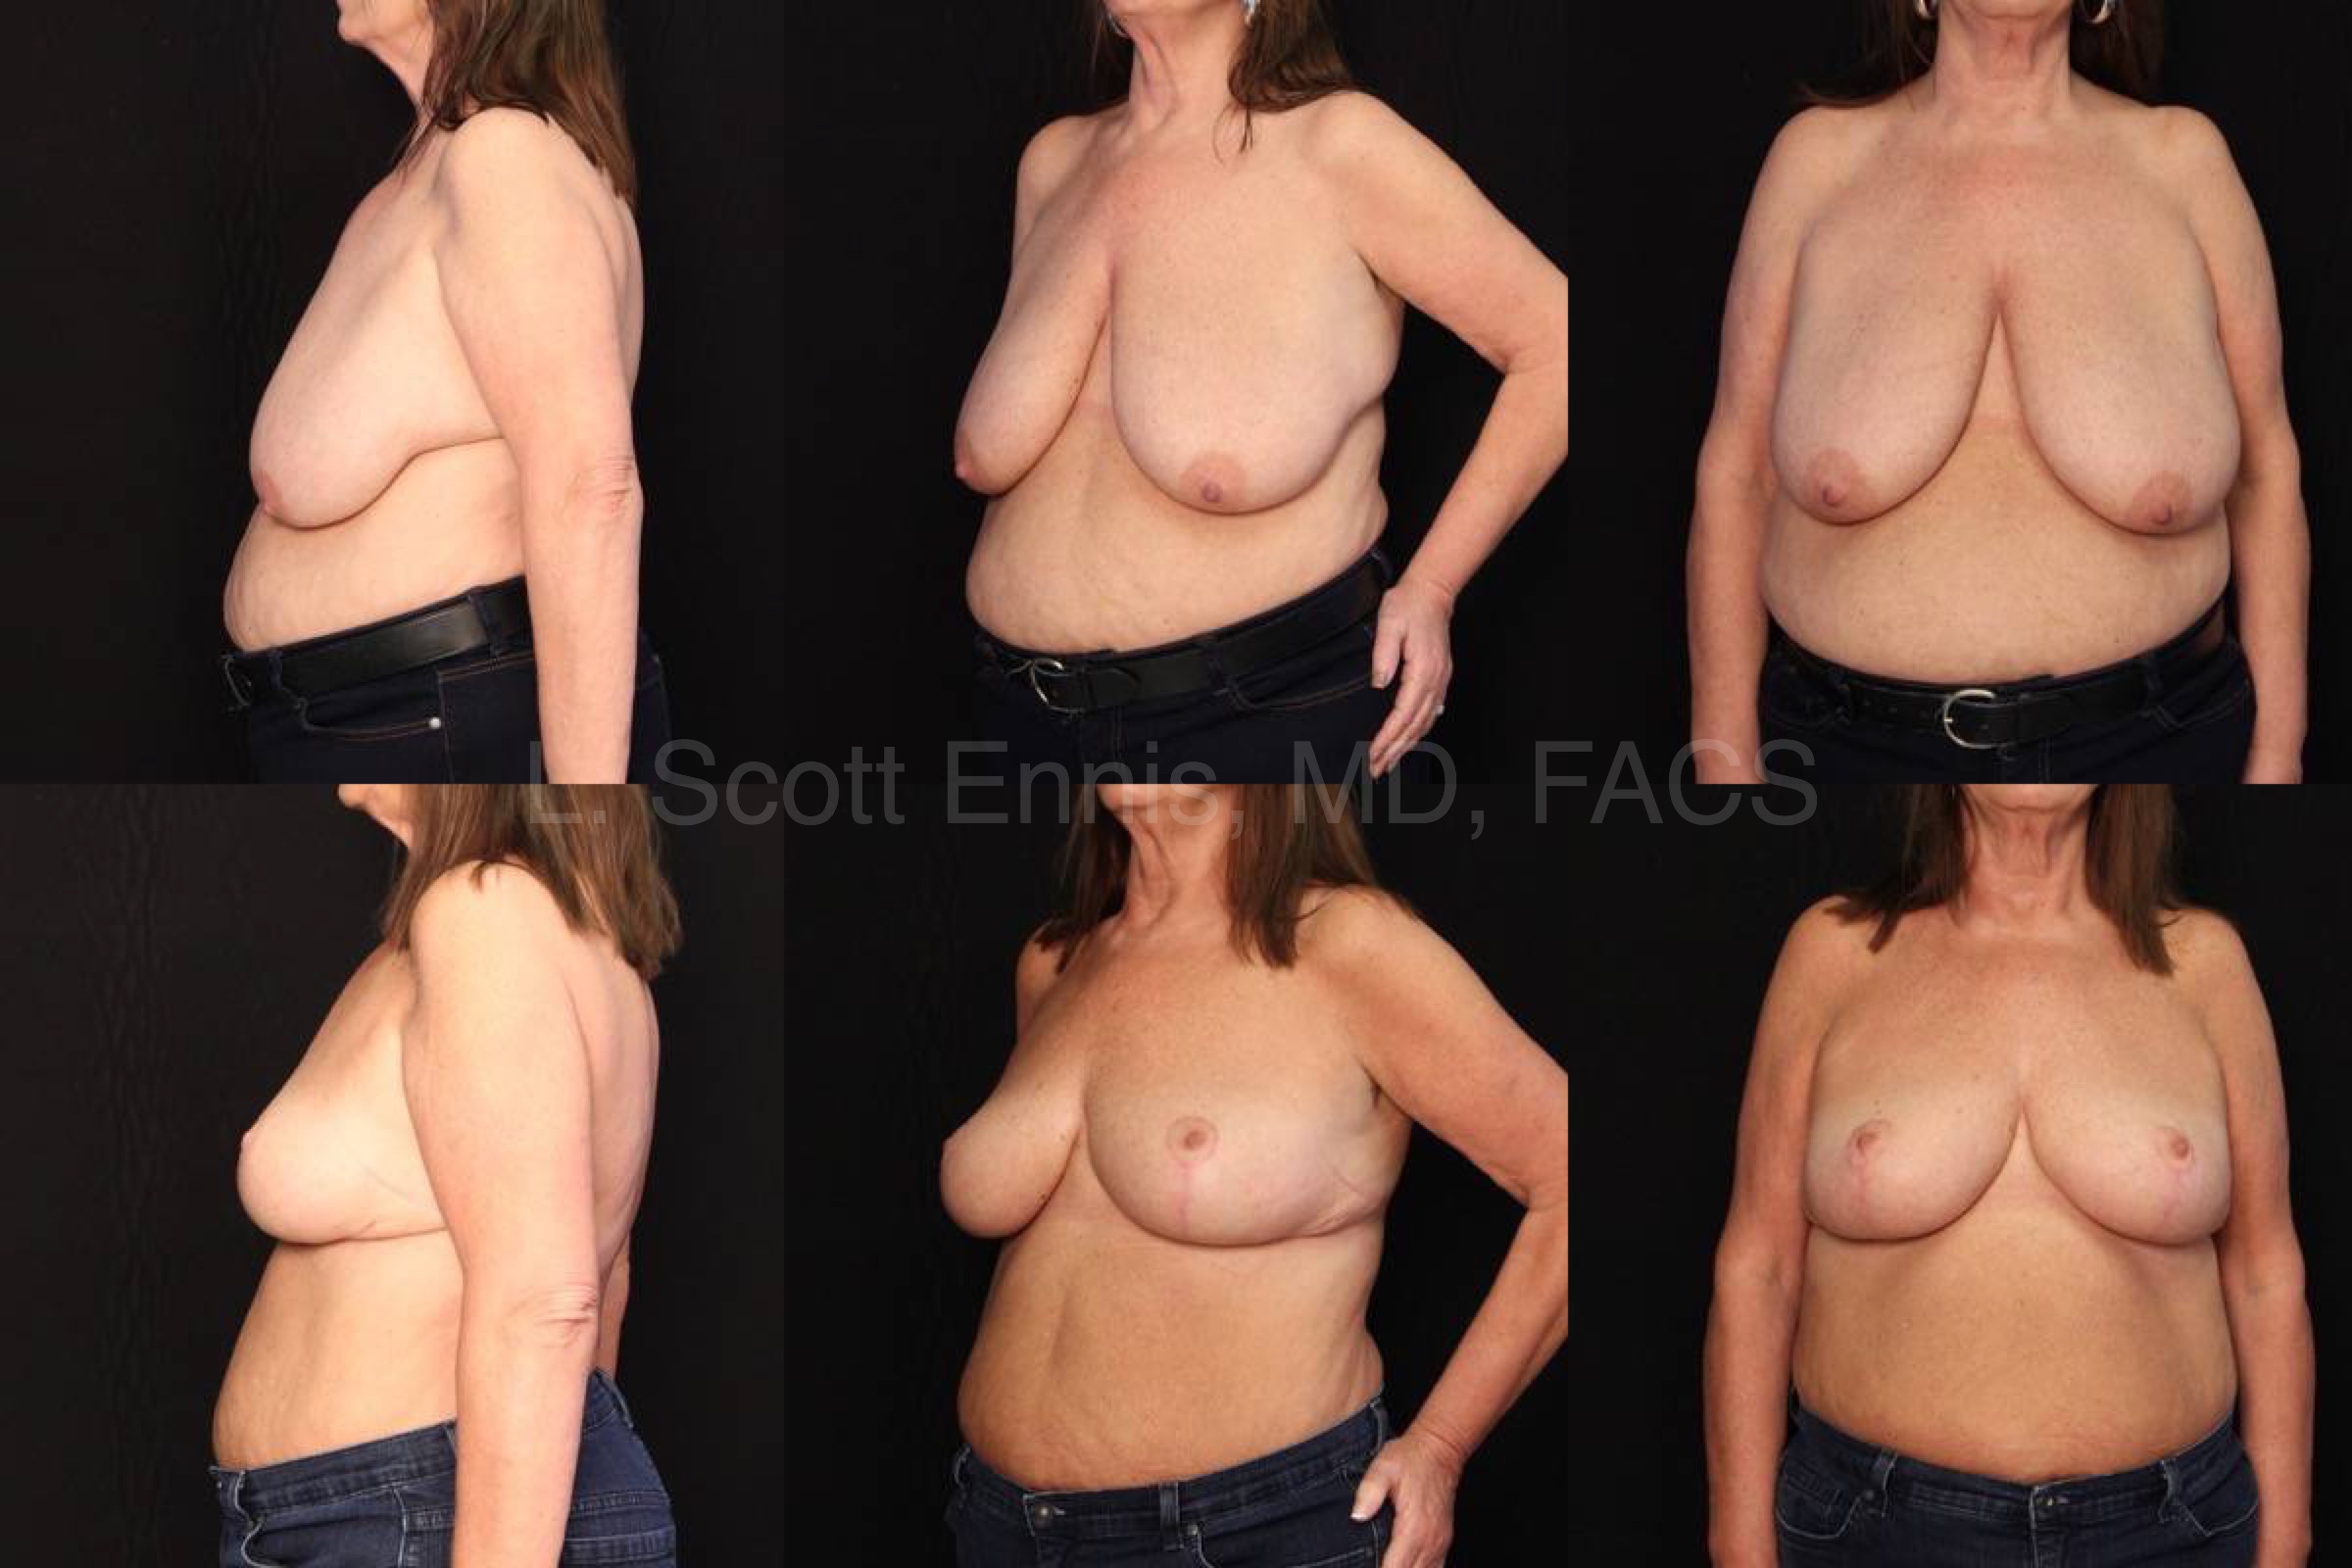 38ddd breasts